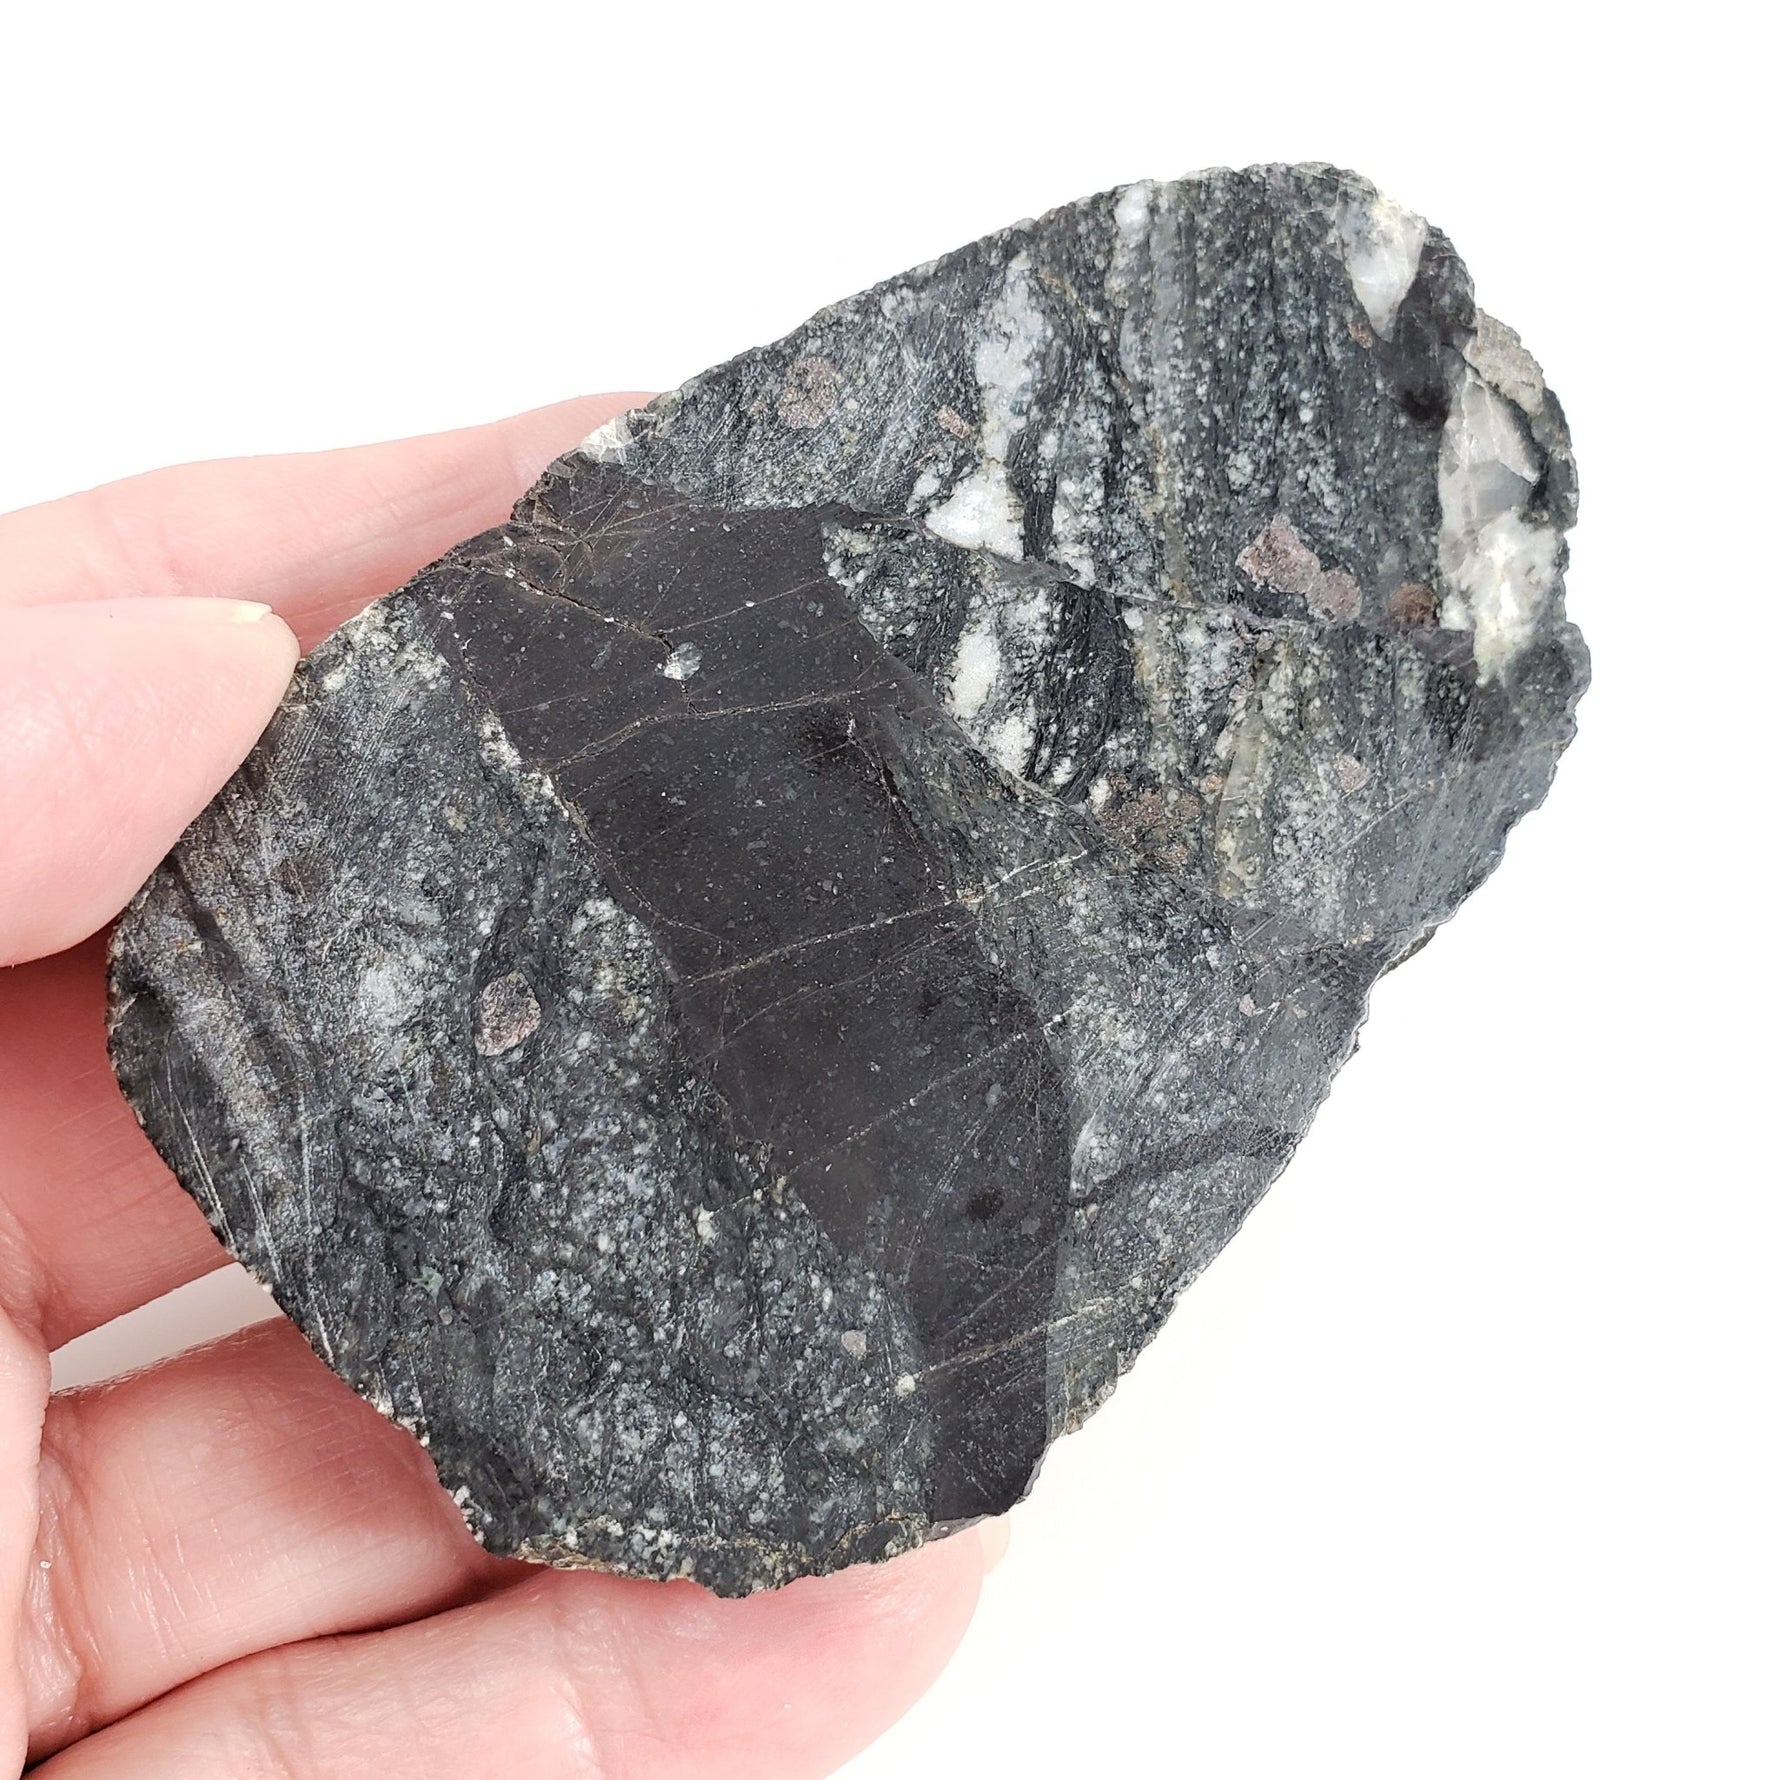 Dellenites Impact Melt Rock | 100 grams | HT Tagamite | Dellen Crater, Sweden | Canagem.com